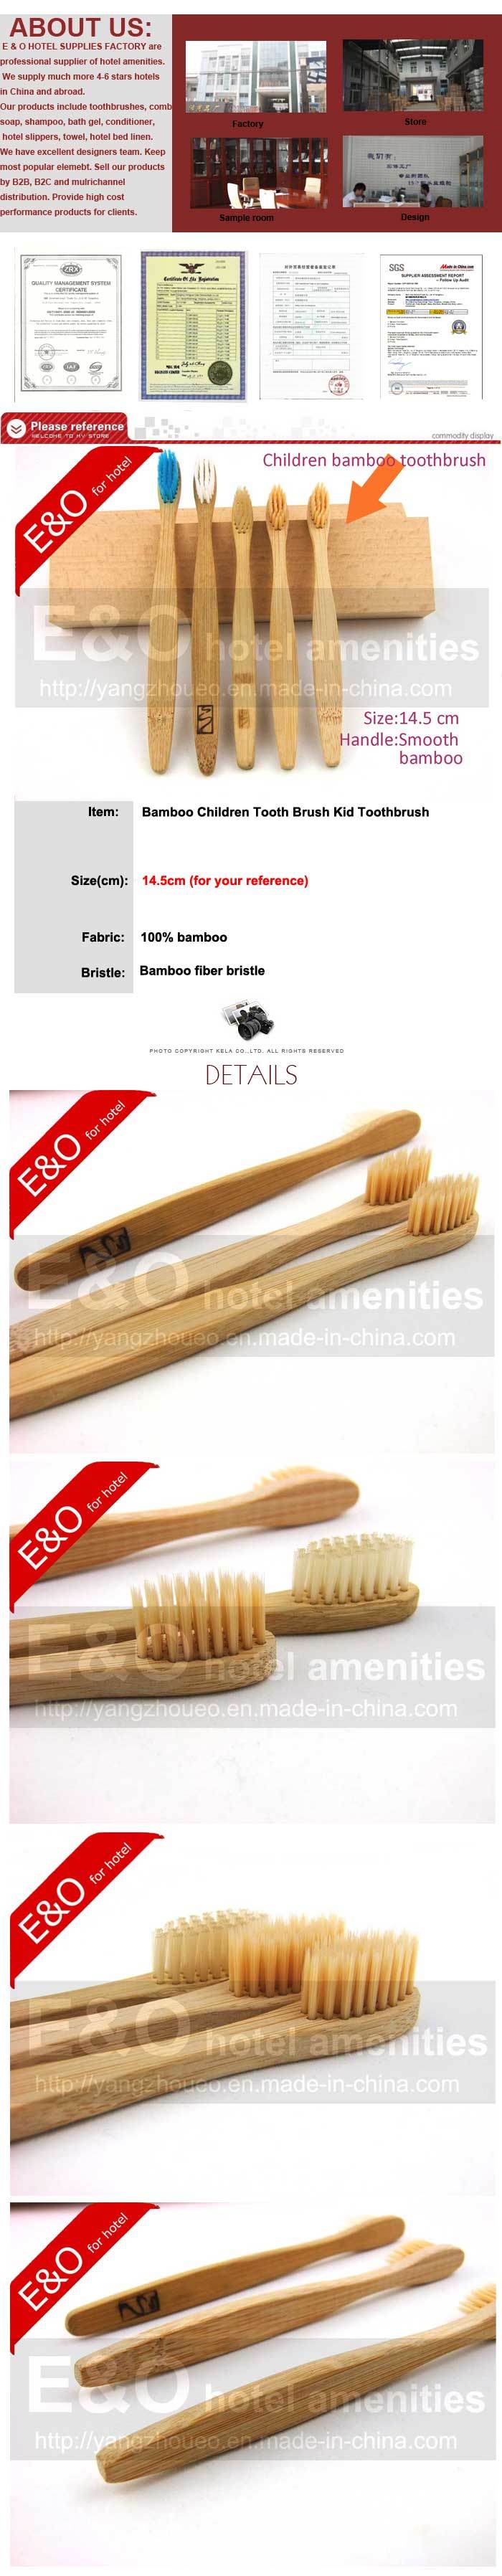 Bamboo Children Tooth Brush Kid Toothbrush